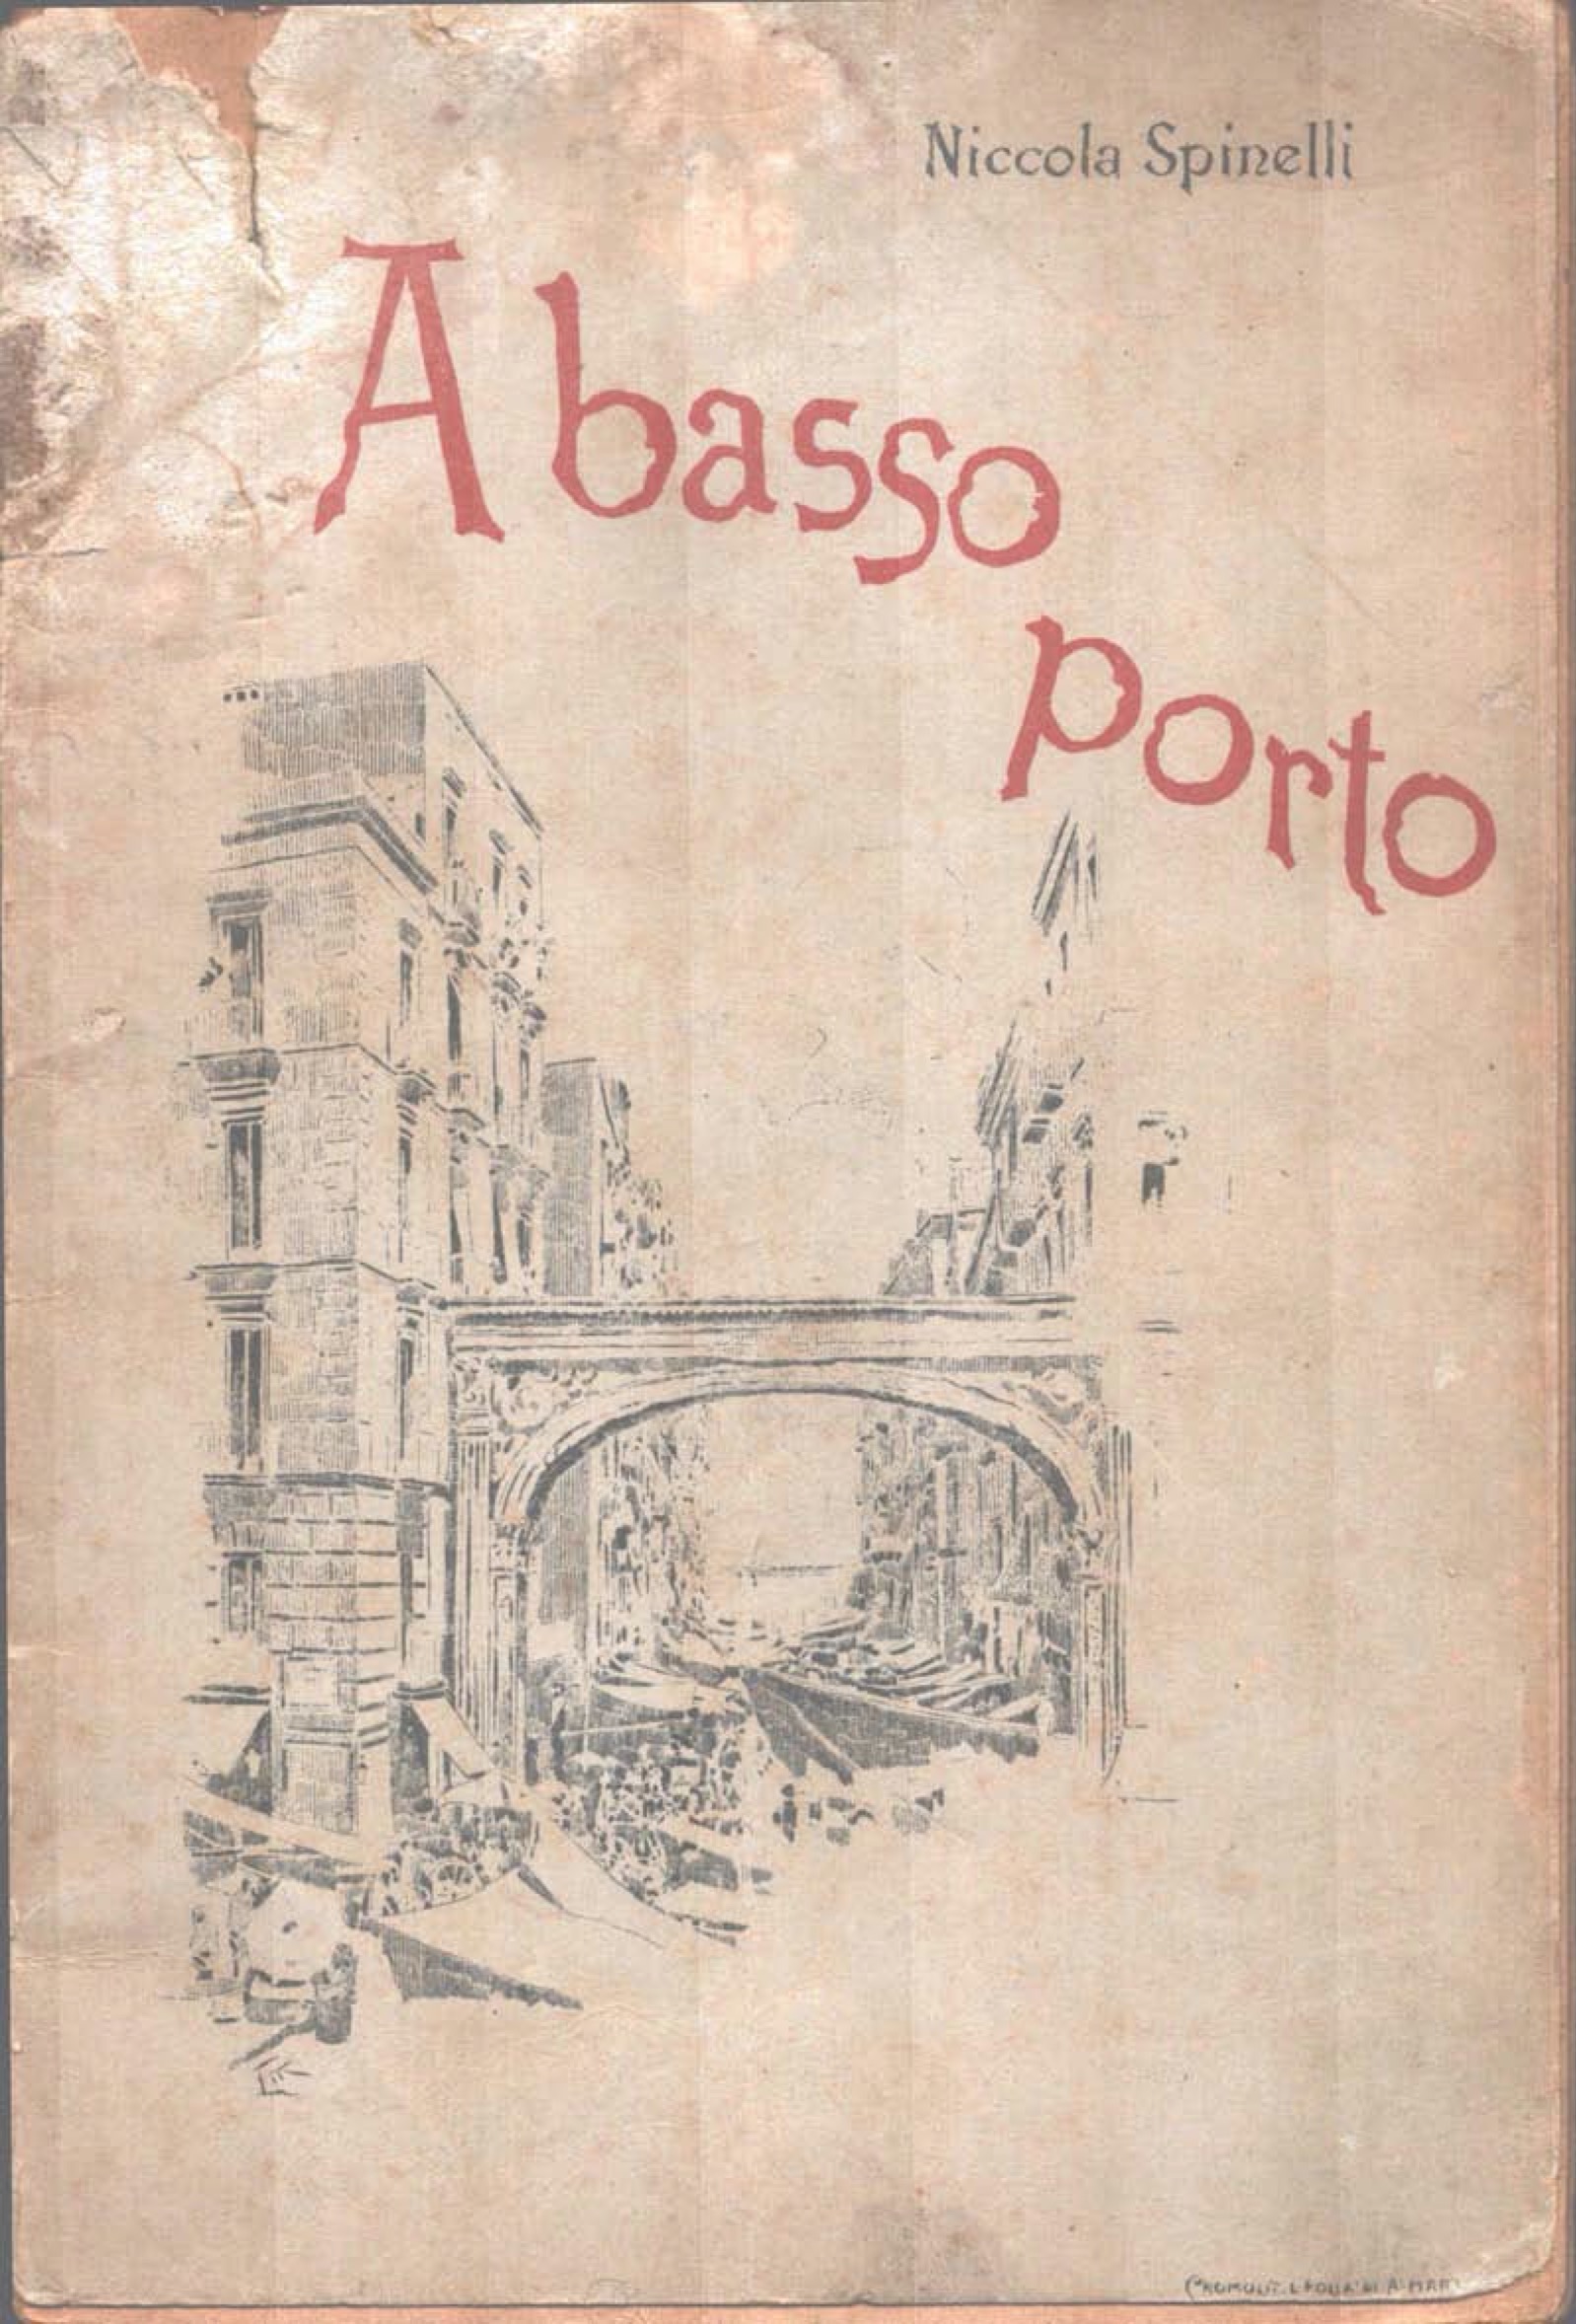 Copertina – Libretto "A basso porto" N. Spinelli